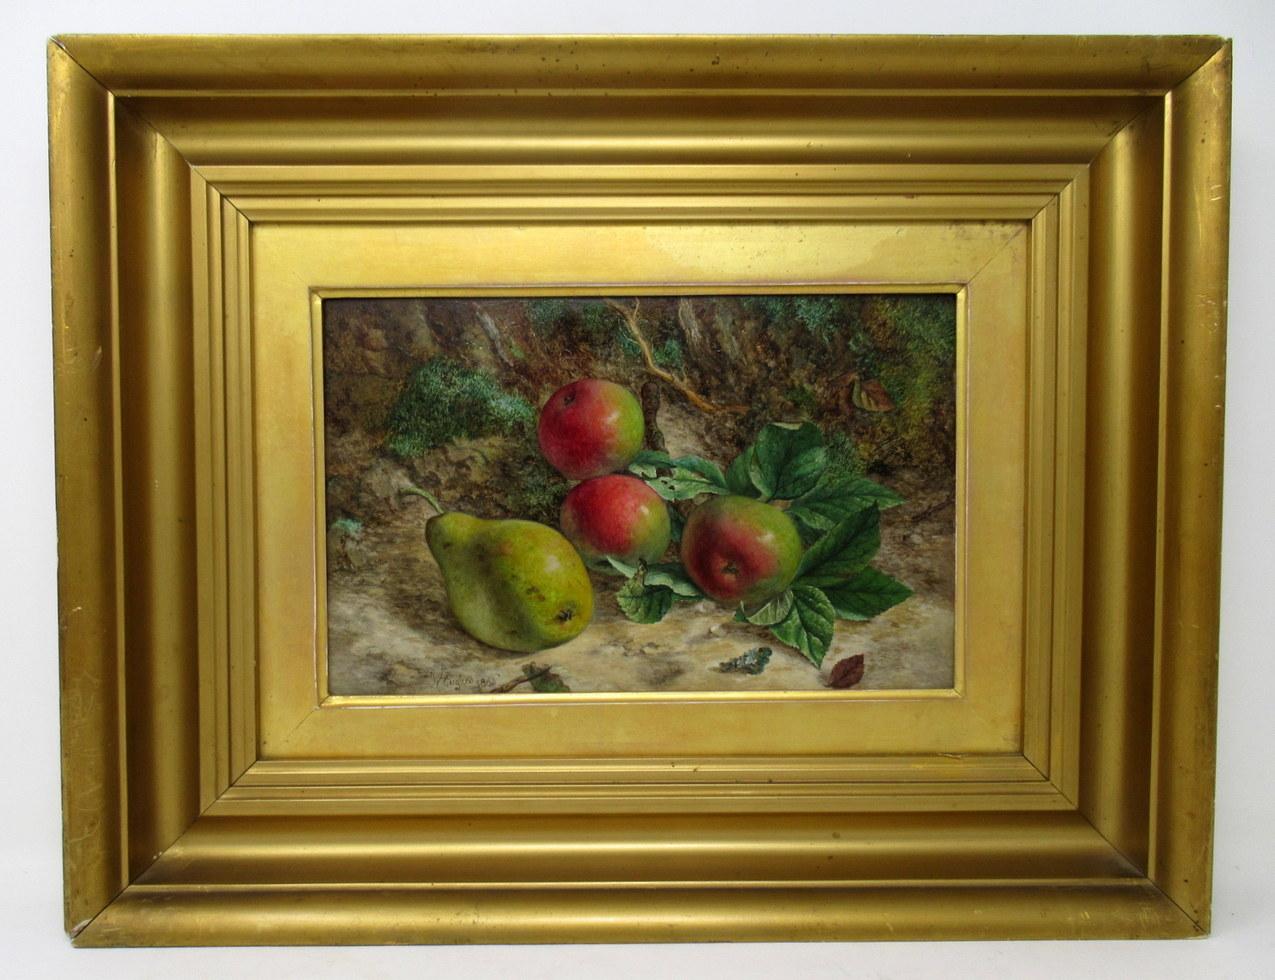 Eine außergewöhnlich gute Qualität Beispiel für ein Paar von gerahmten Stillleben von Früchten Ölgemälde auf Künstler Bord von gut dokumentiert englischen Künstler William Hughes, dritten Quartal des neunzehnten Jahrhunderts. Komplett mit guten